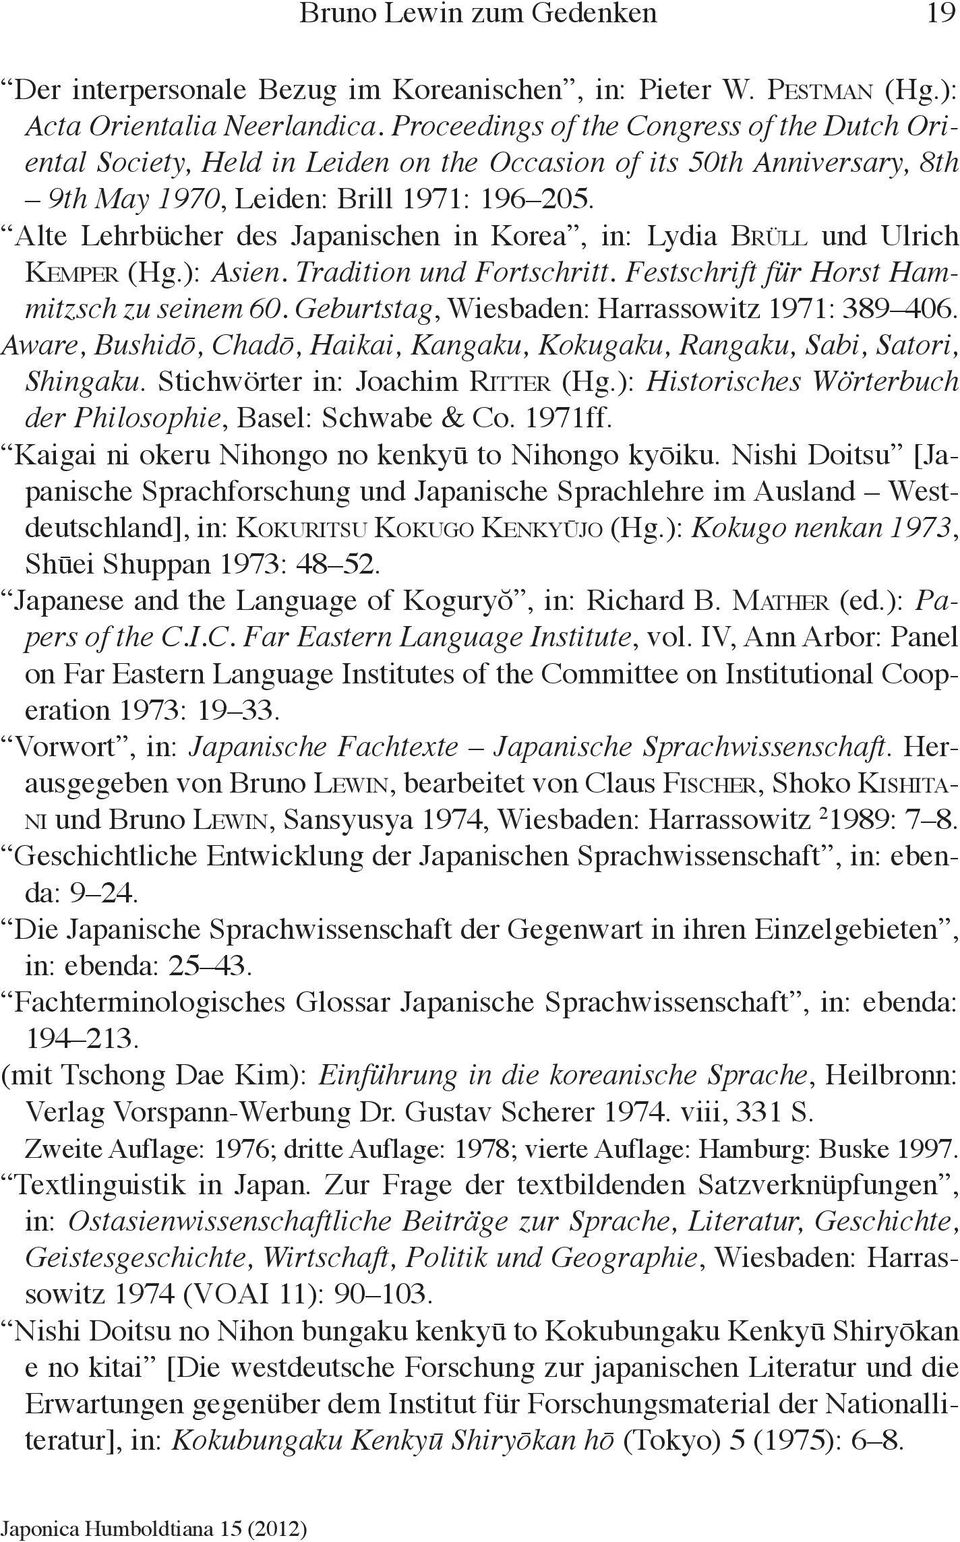 Alte Lehrbücher des Japanischen in Korea, in: Lydia Brüll und Ulrich Kemper (Hg.): Asien. Tradition und Fortschritt. Festschrift für Horst Hammitzsch zu seinem 60.